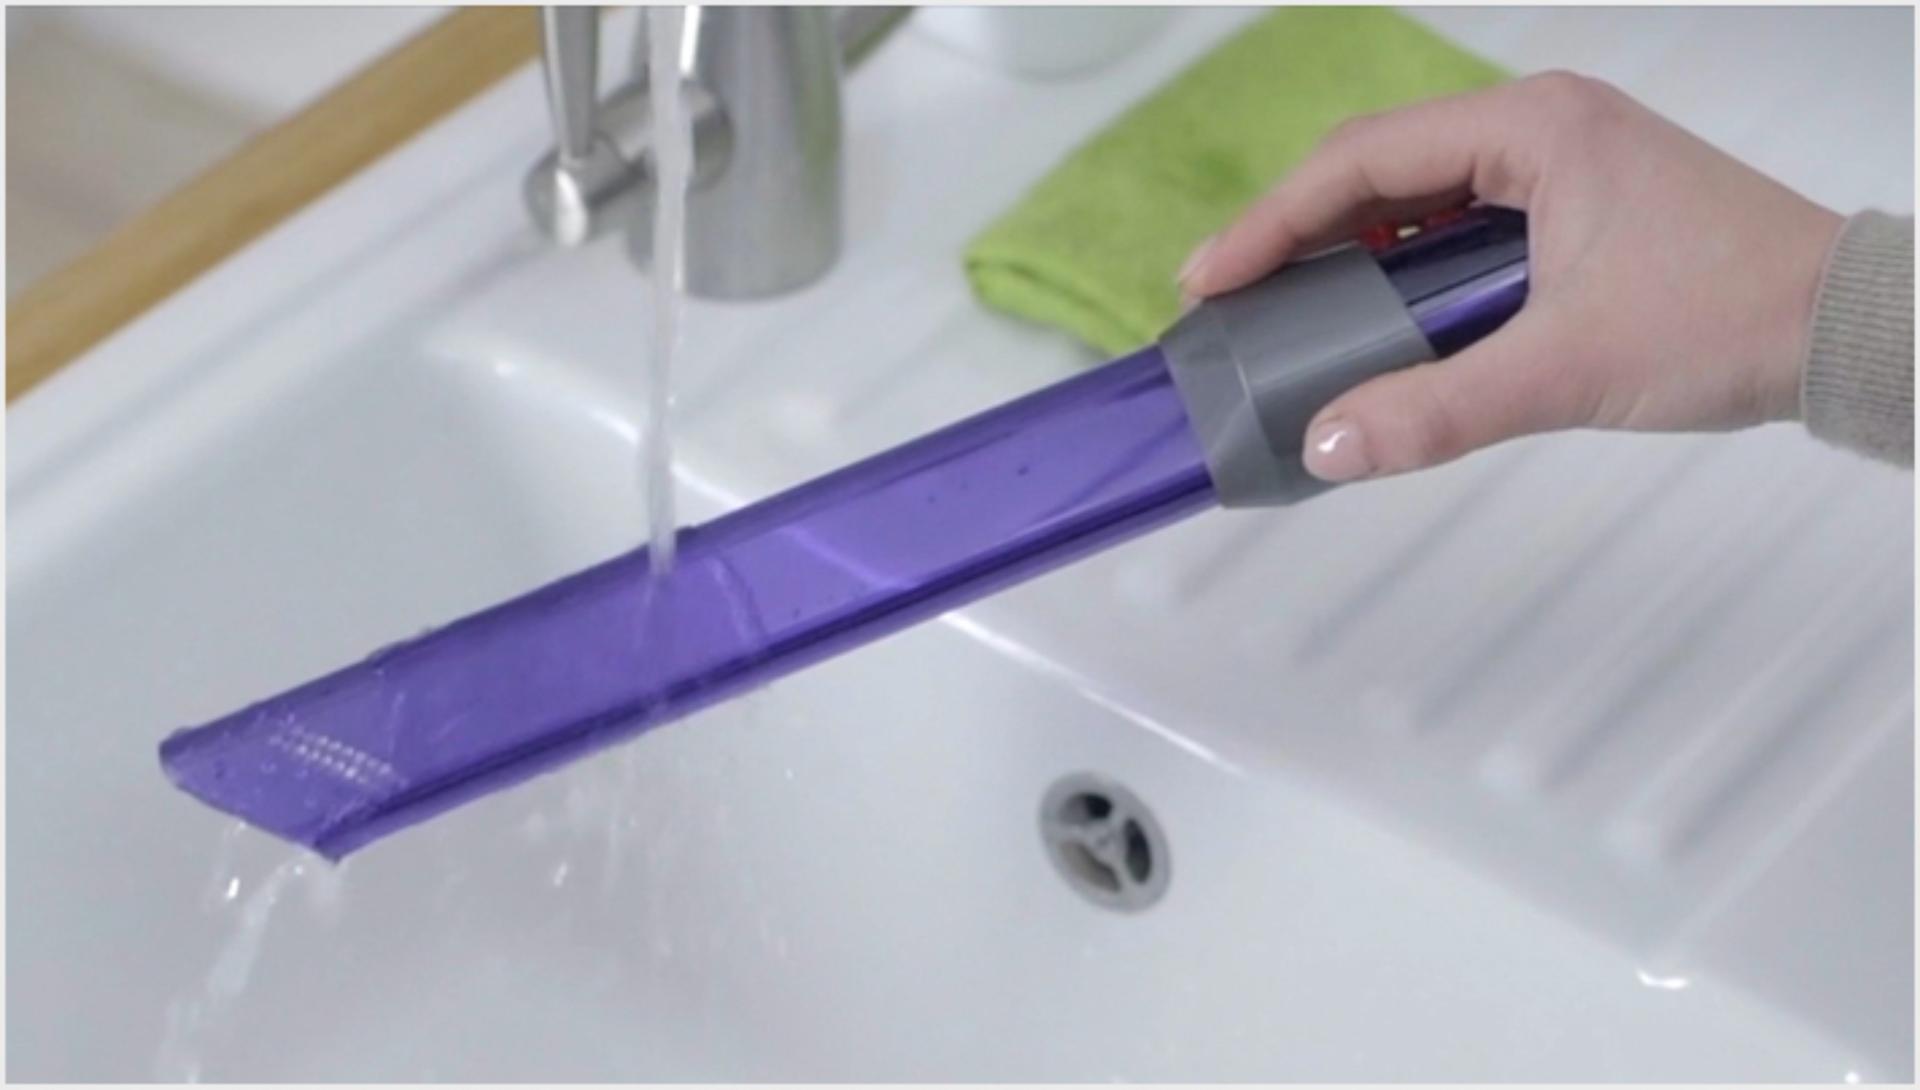 Gambar dari video tentang membersihkan alat pembersih celah light-pipe